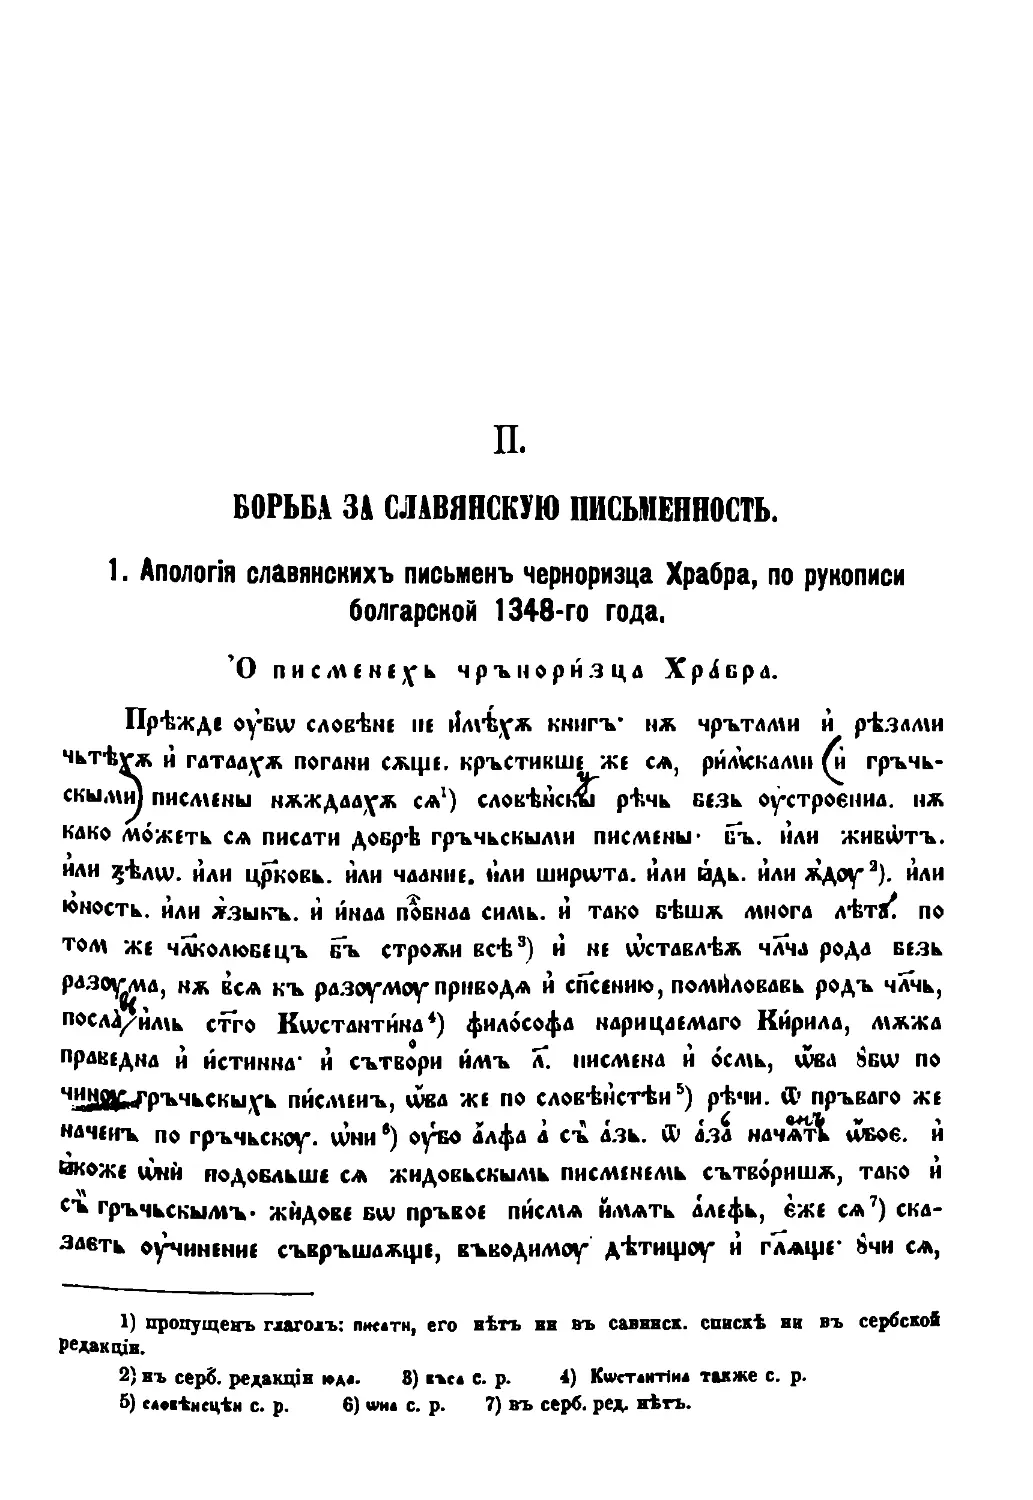 II. Борьба зa славянскую письменность [9/297]